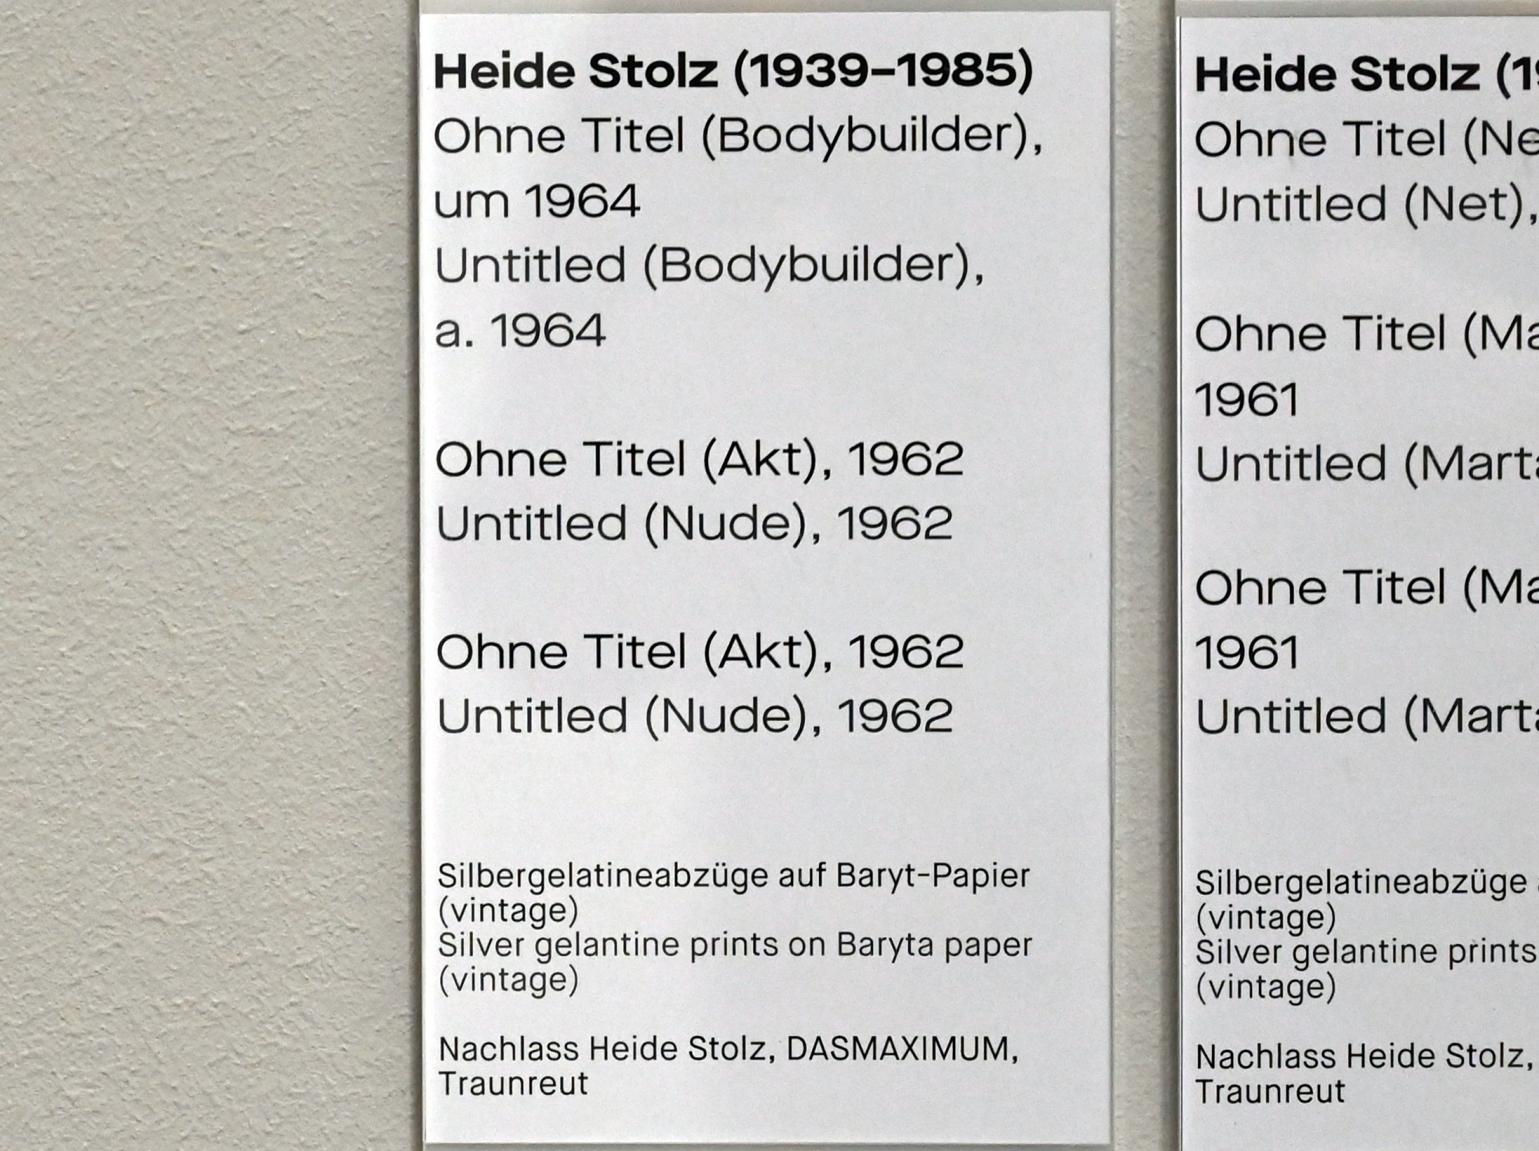 Heide Stolz (1960–1969), Ohne Titel (Akt), Chemnitz, Museum Gunzenhauser, Saal 1.3 - Uwe Lausen und Heide Stolz, 1962, Bild 2/2